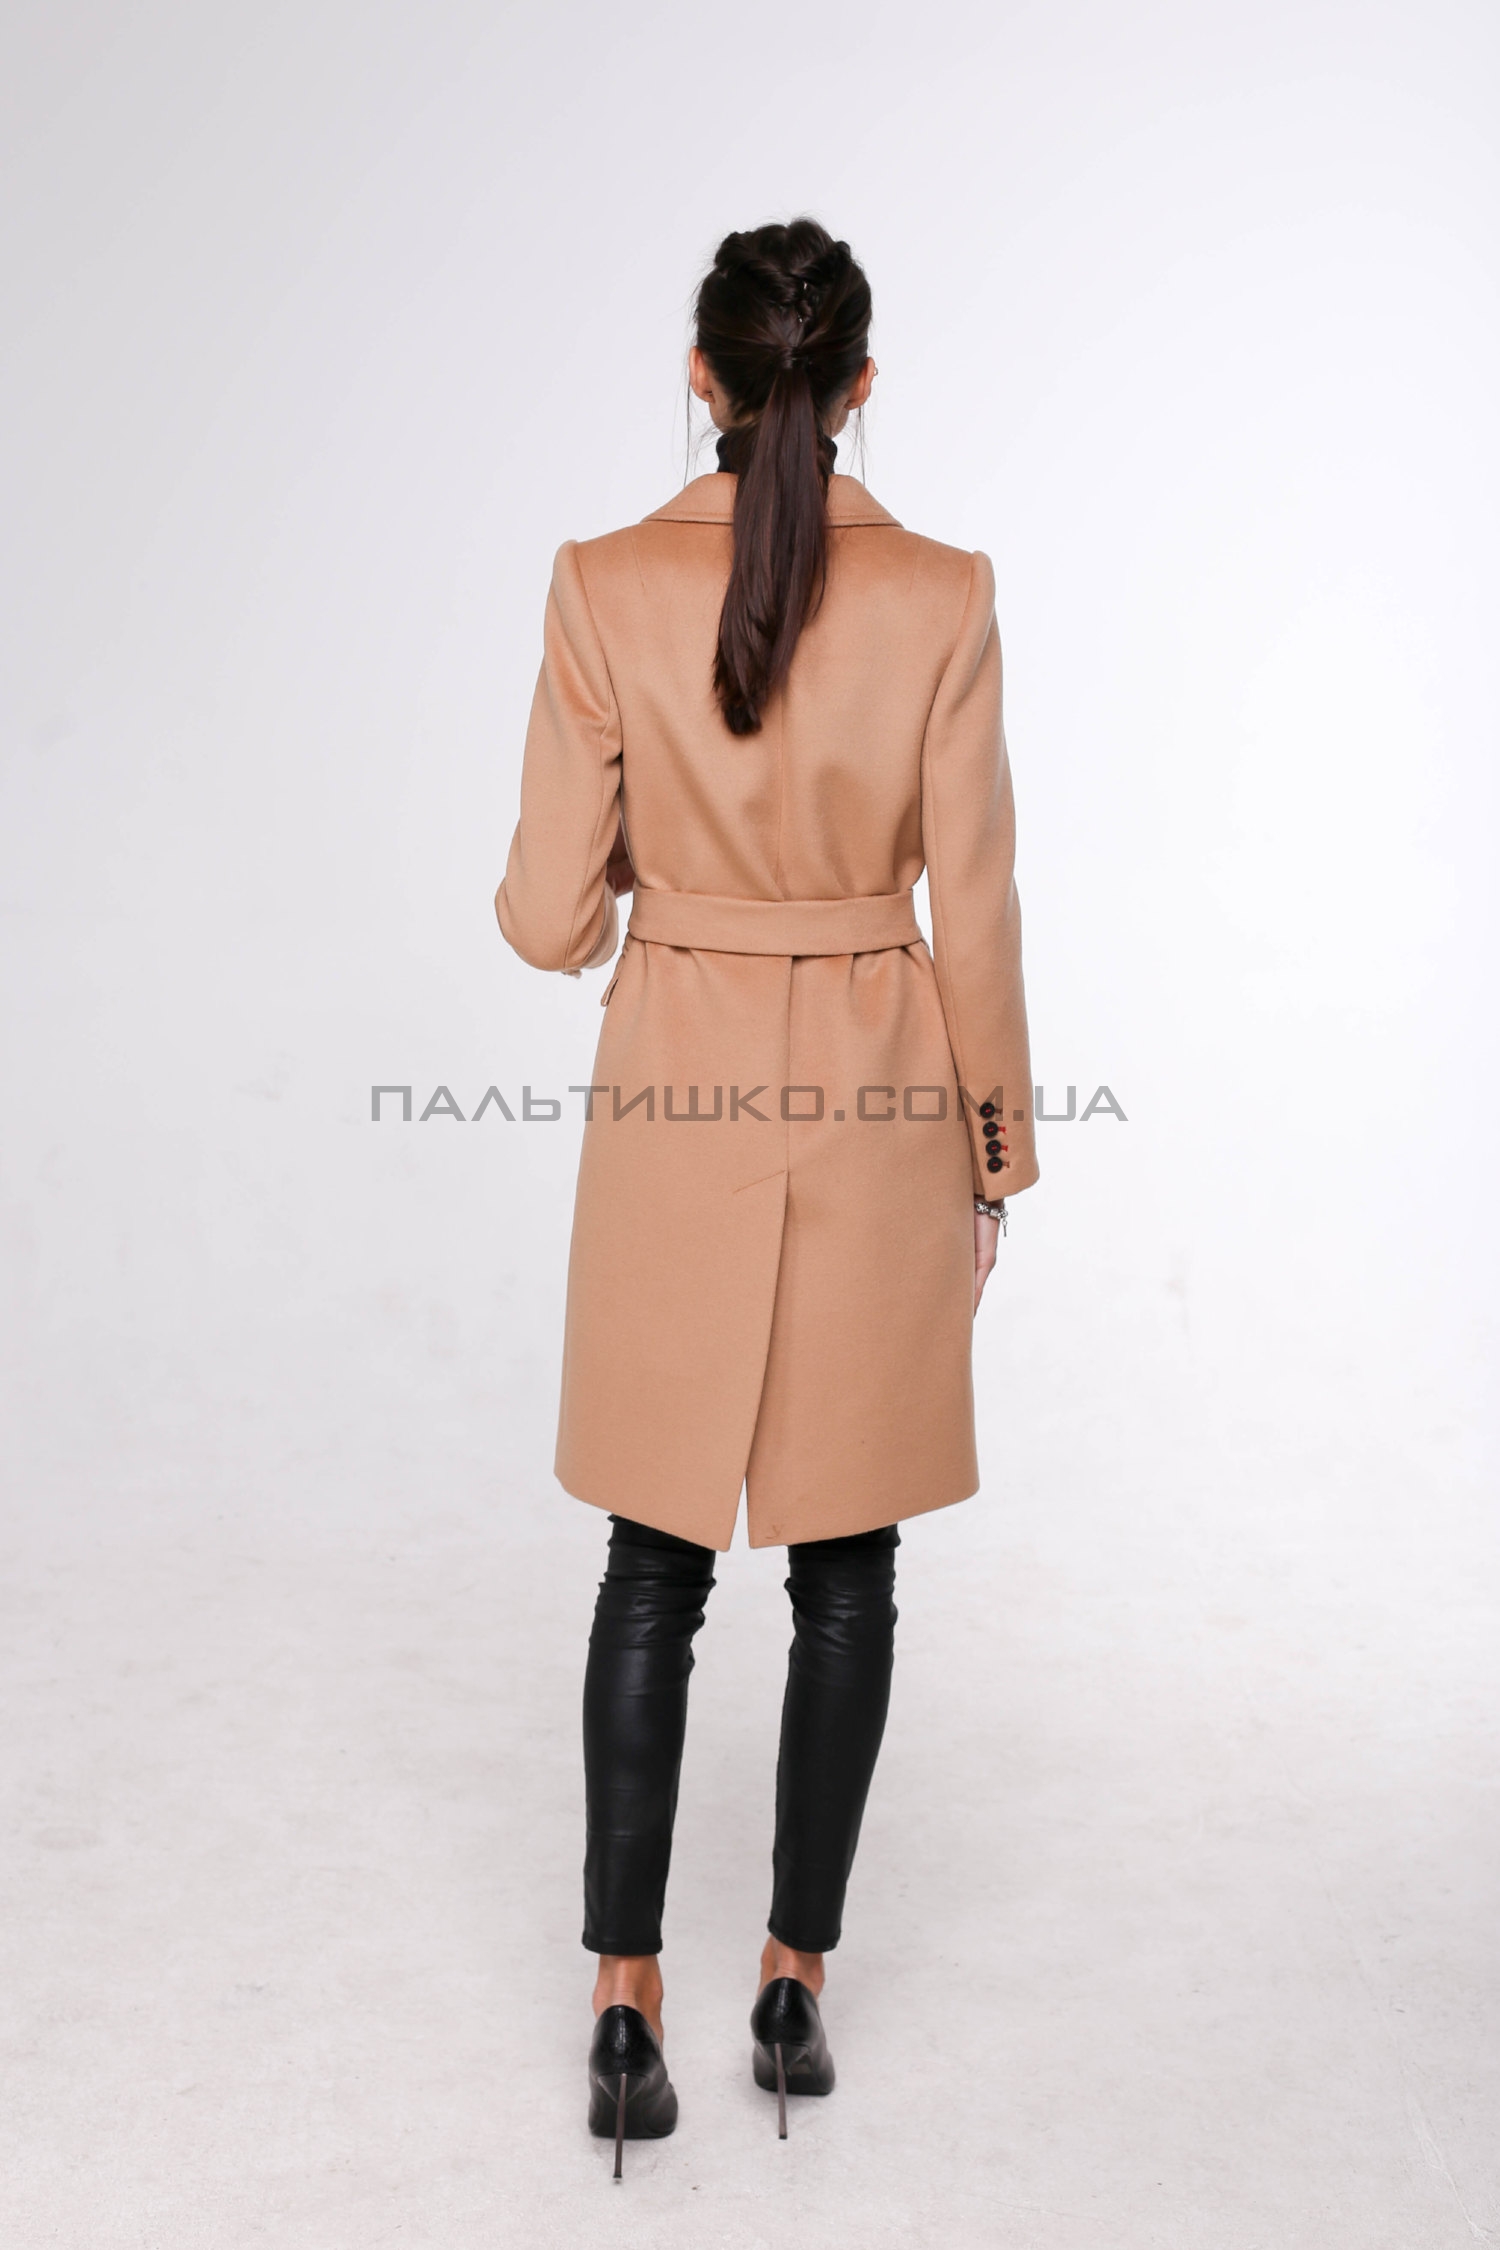  Жіноче пальто № 123